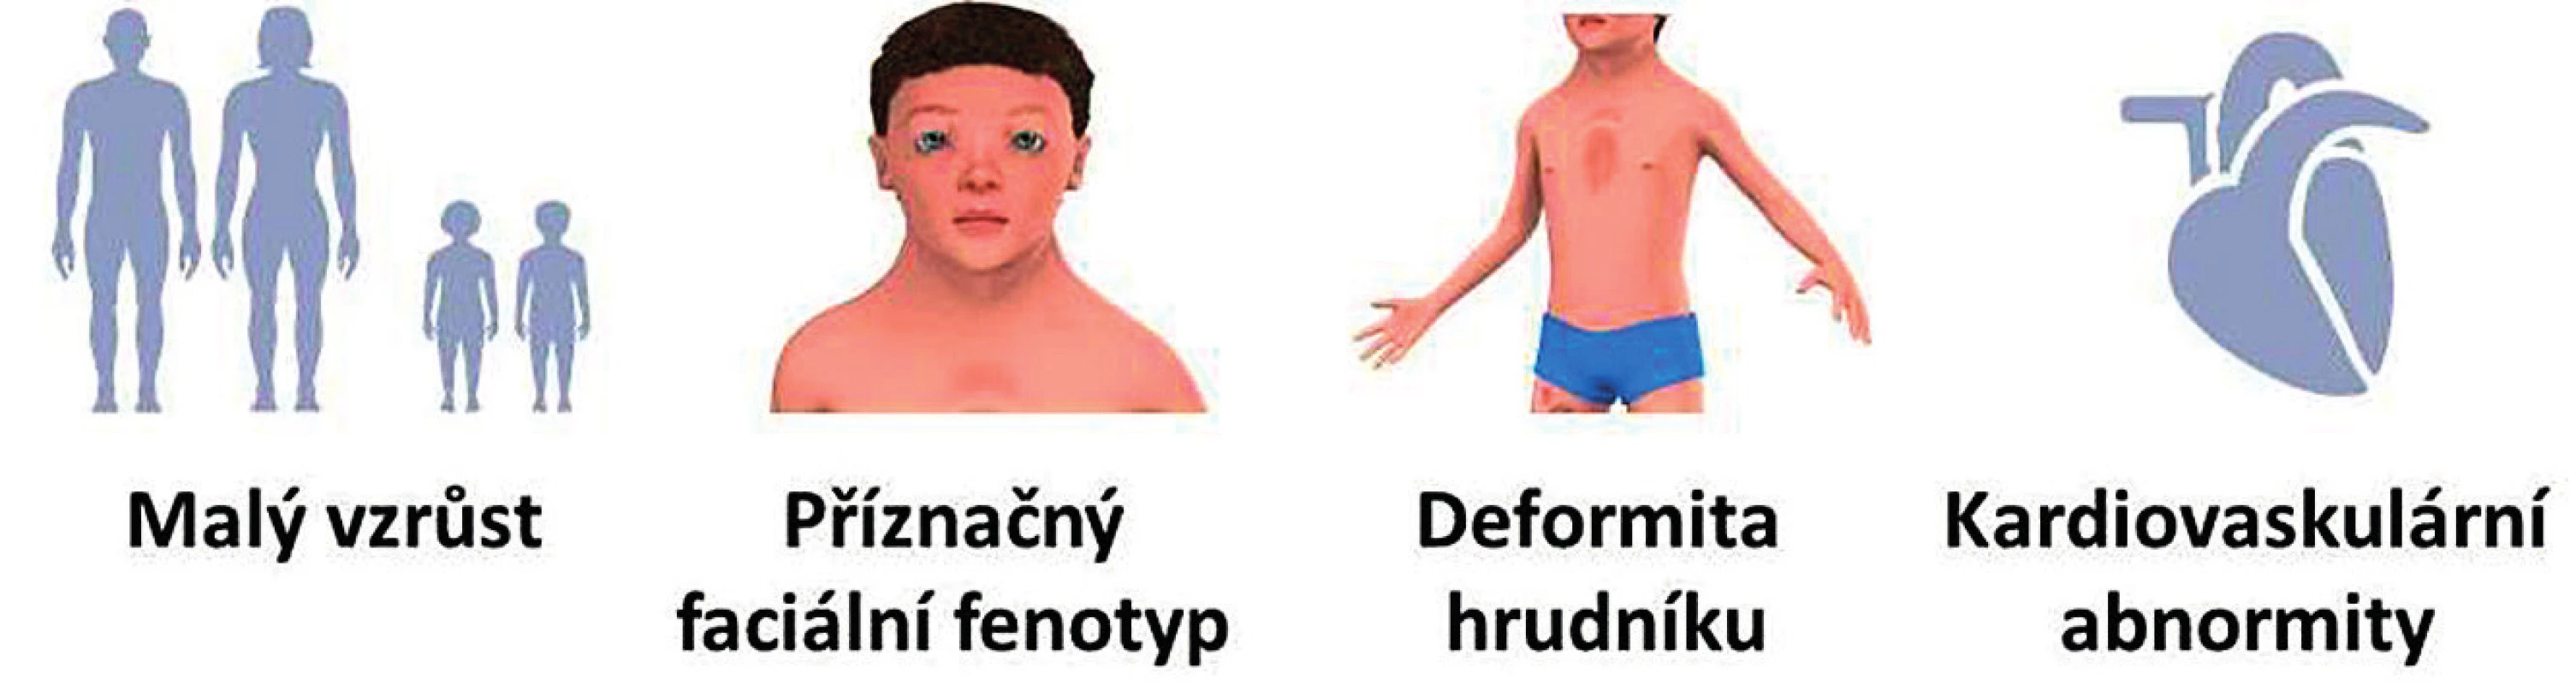 Hlavní klinické příznaky RASopatií/syndromu Noonanové.<br>
Fig. 1. Major clinical signs of RASopathies/Noonan syndrome.